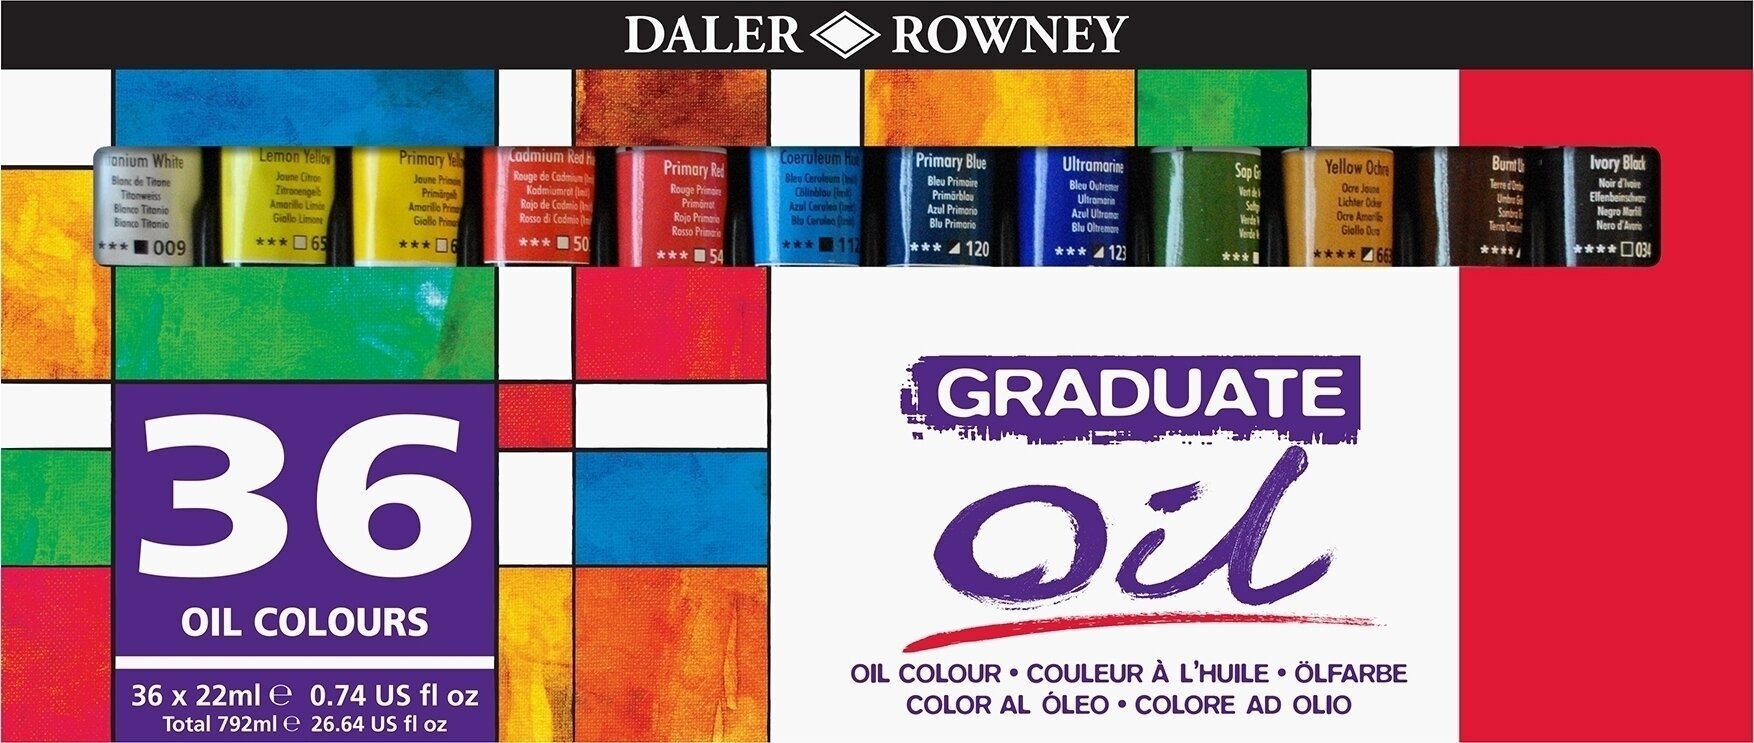 Oil colour Daler Rowney Graduate Set of Oil Paints 36 x 22 ml